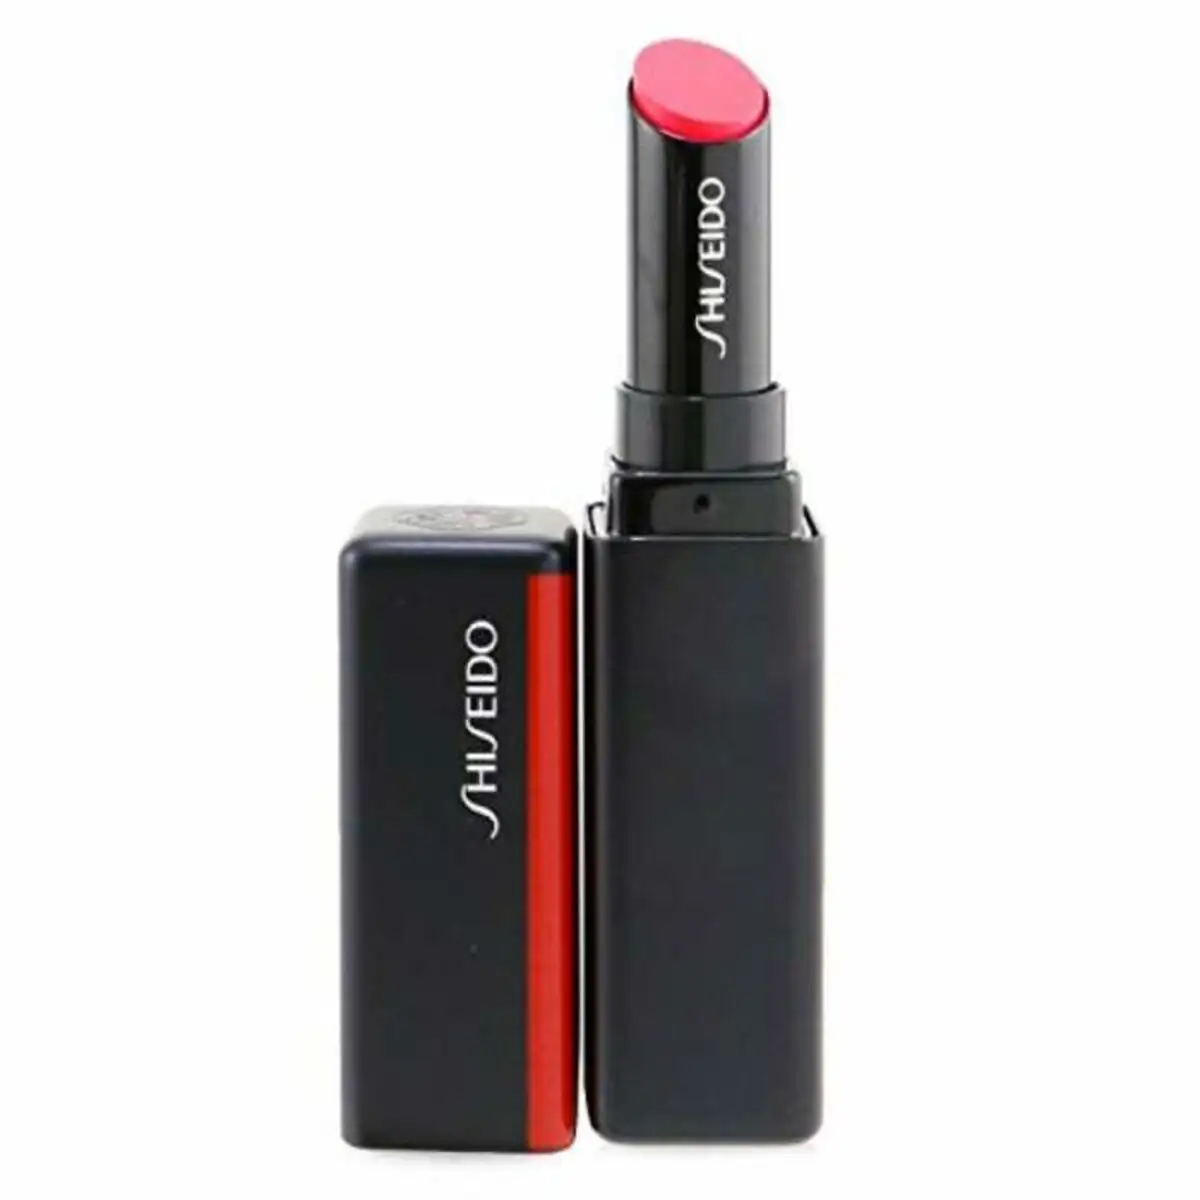 Rouge a levres color gel lip balm shiseido 729238153325 2 g _1473. DIAYTAR SENEGAL - Là où l'Élégance Devient un Mode de Vie. Naviguez à travers notre gamme et choisissez des produits qui apportent une touche raffinée à votre quotidien.